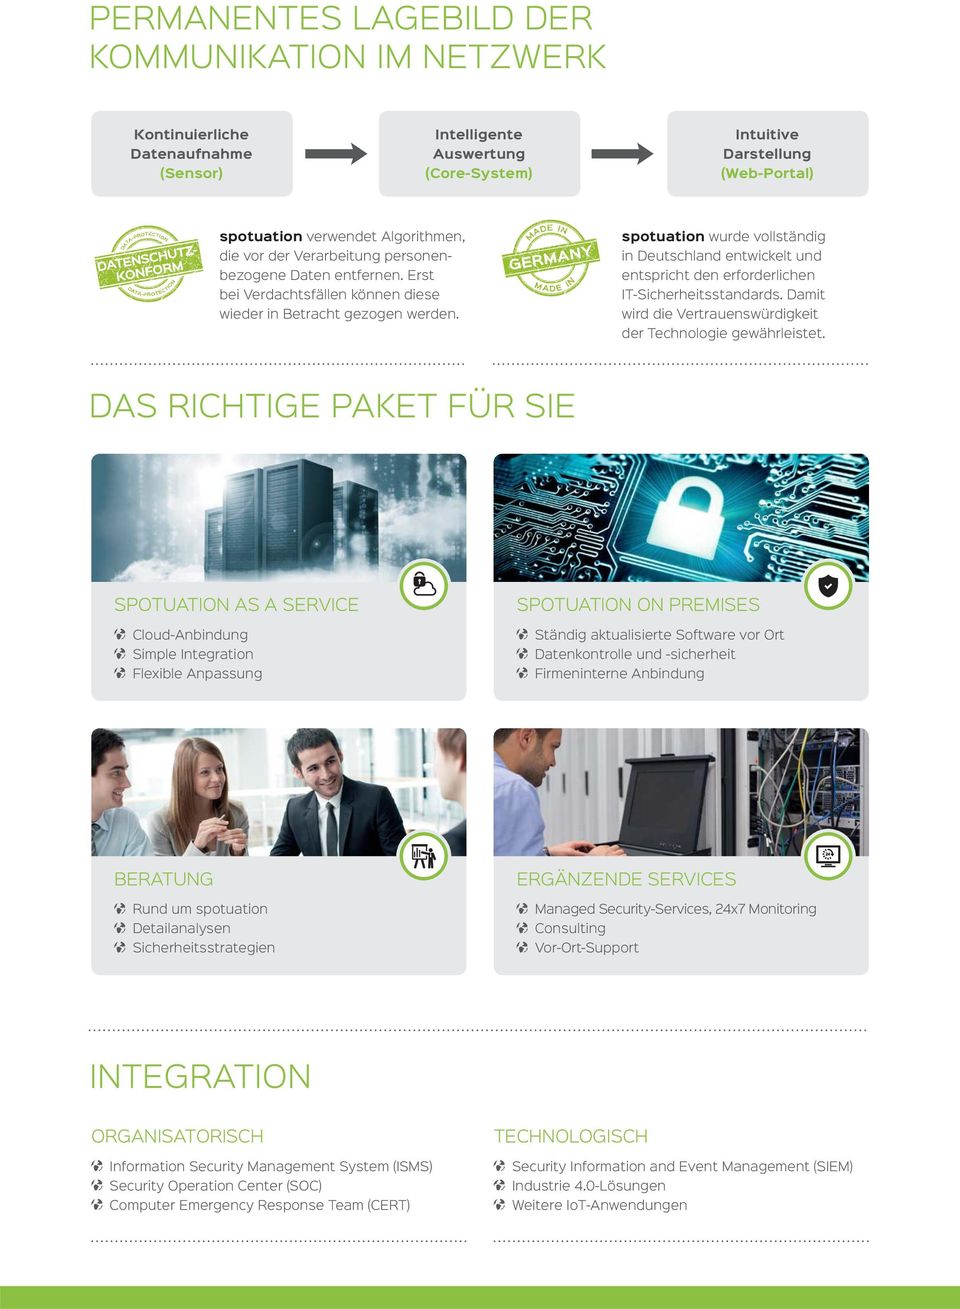 MADE IN GERMANY MADE IN spotuation wurde vollständig in Deutschland entwickelt und entspricht den erforderlichen IT-Sicherheitsstandards.